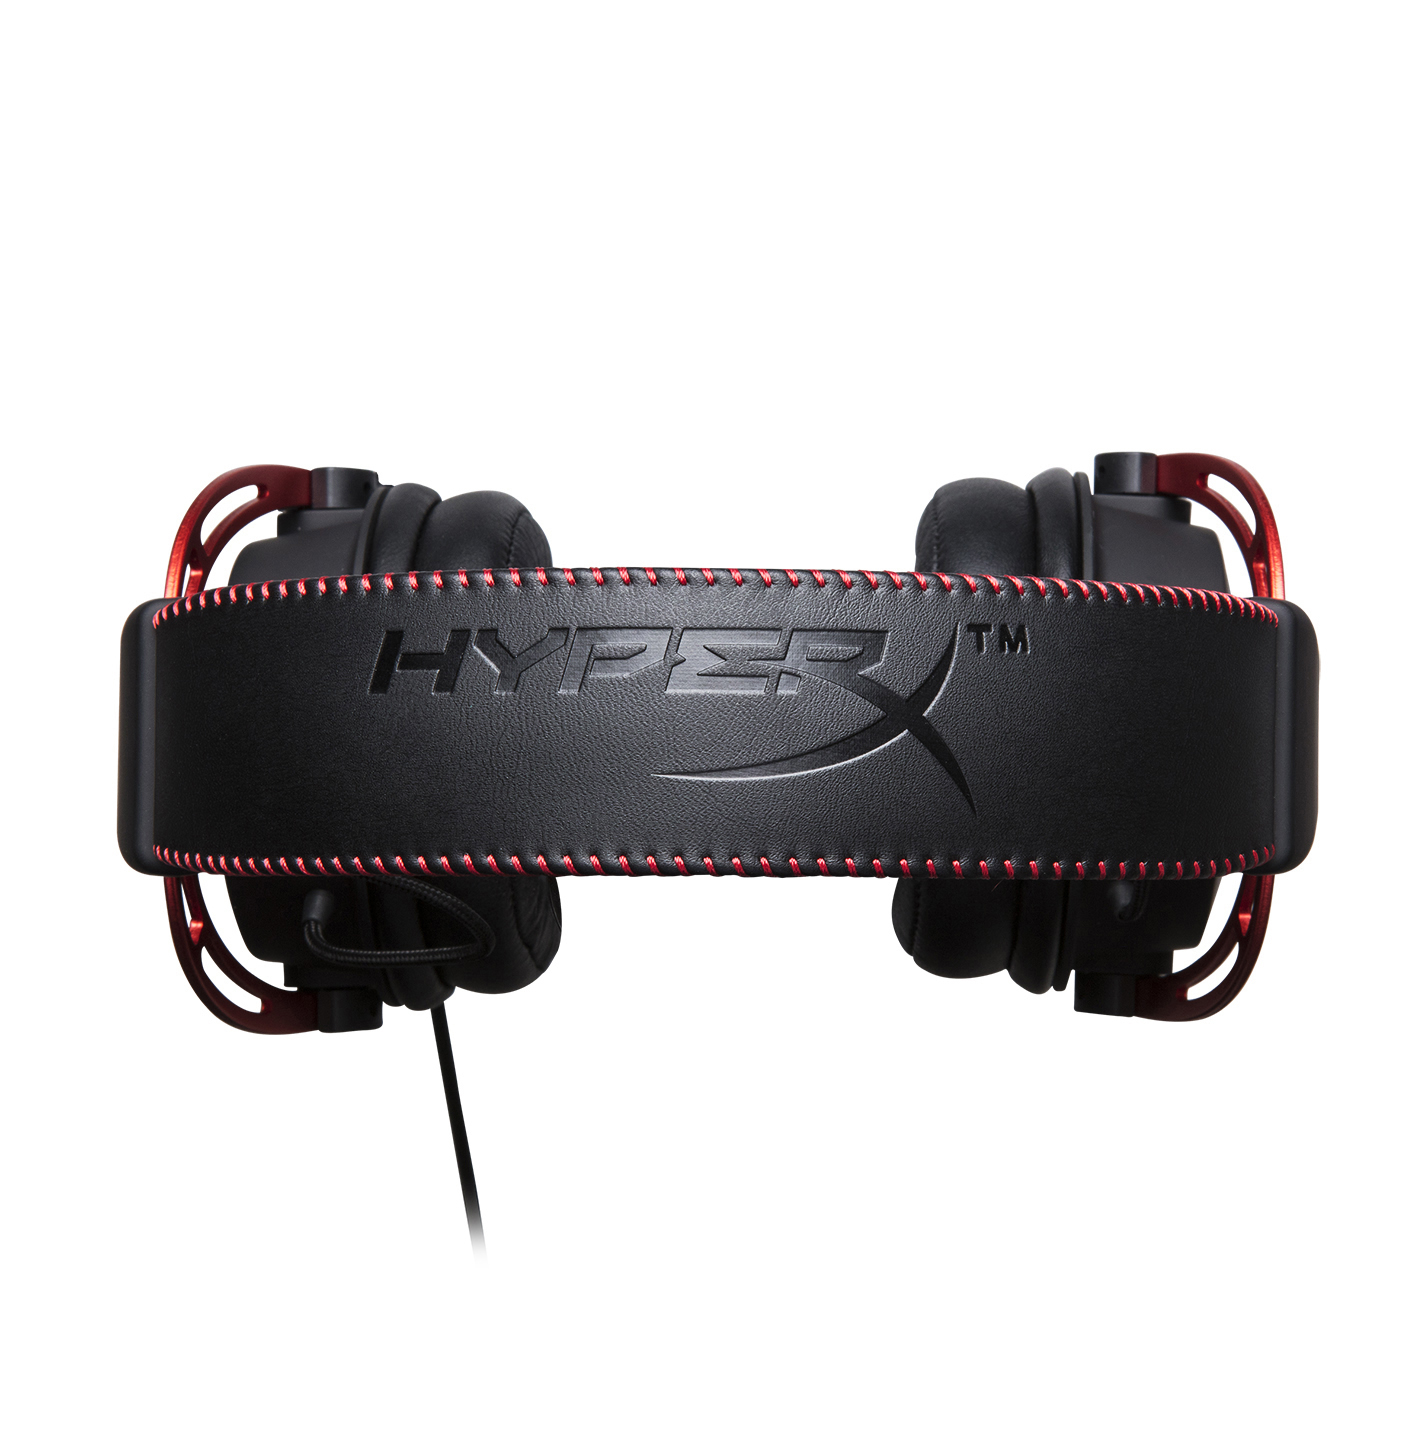 HYPERX Cloud Alpha, Schwarz/Rot Over-ear Gaming Headset